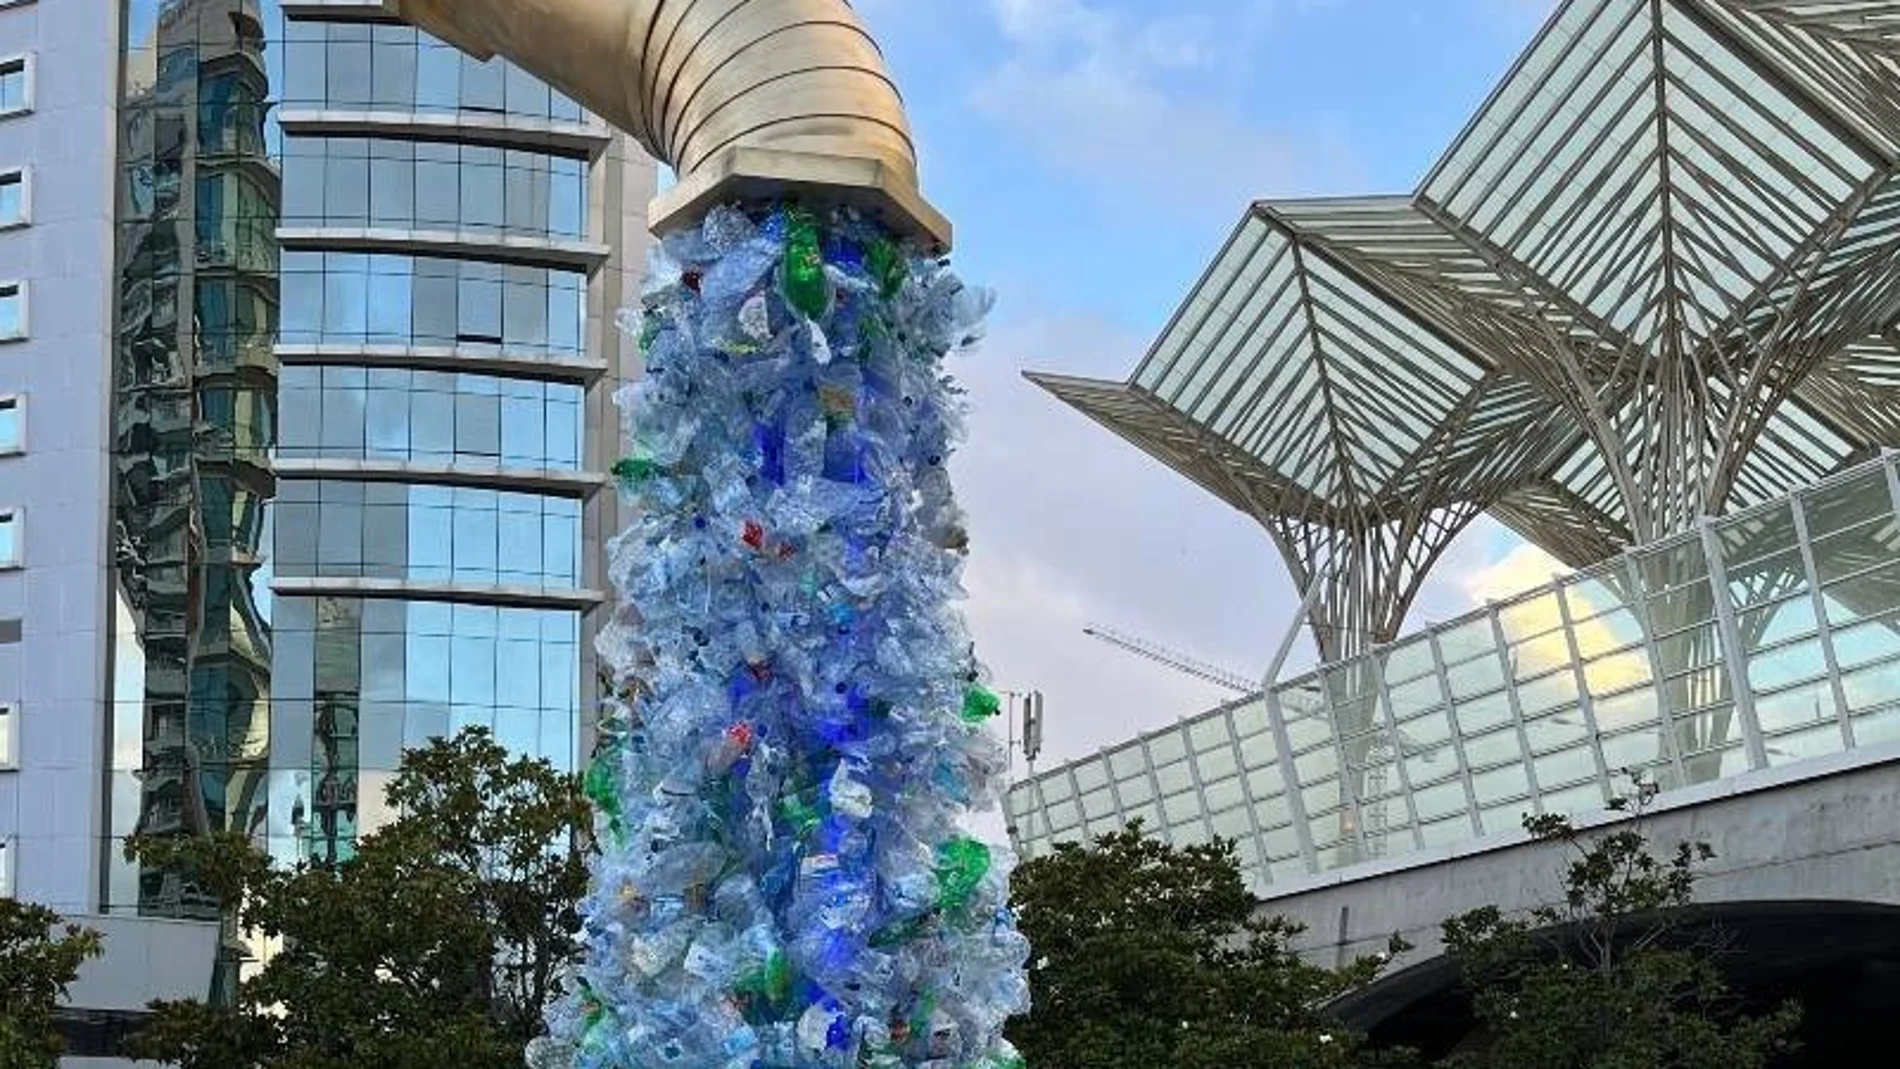 La instalación, ubicada a un minuto de la sede de la UNOC en Lisboa, utiliza 250 kilos de plástico desechado